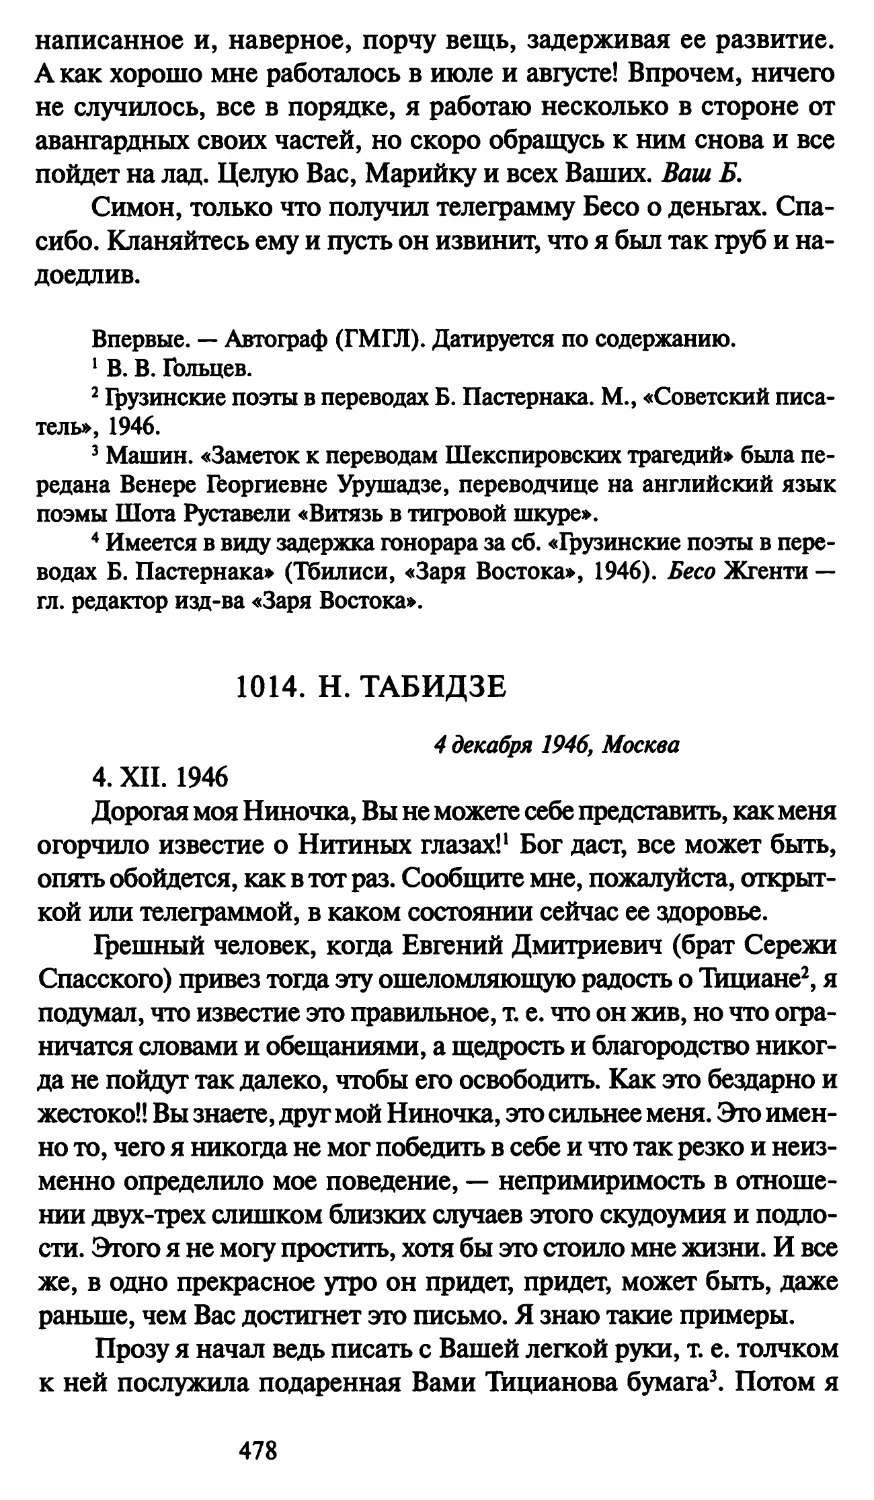 1014. Н. Табидзе 4 декабря 1946